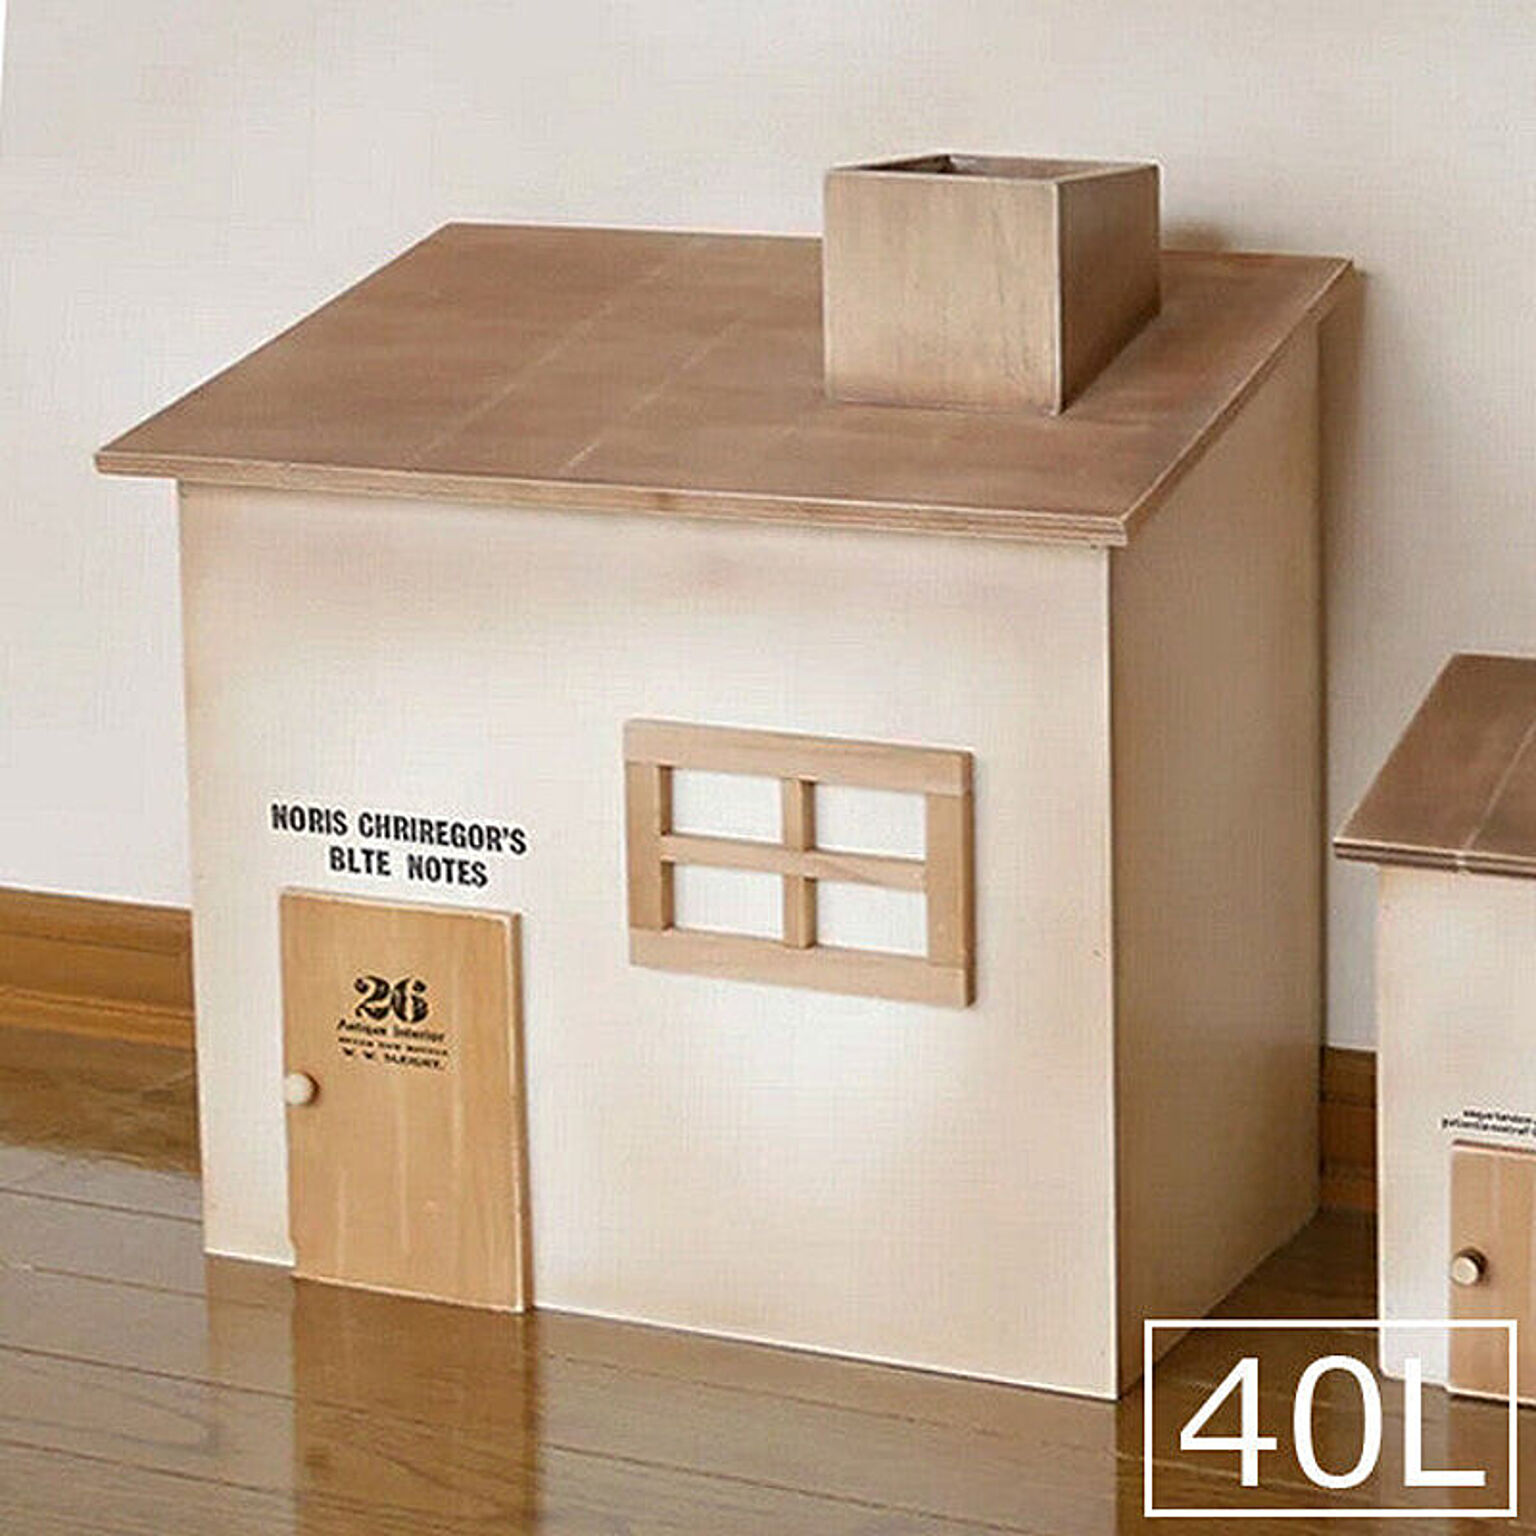 40L ゴミ箱 おしゃれ 木製 かわいい おうちの形のダストボックス フタ付き ごみ箱 BREAブレア